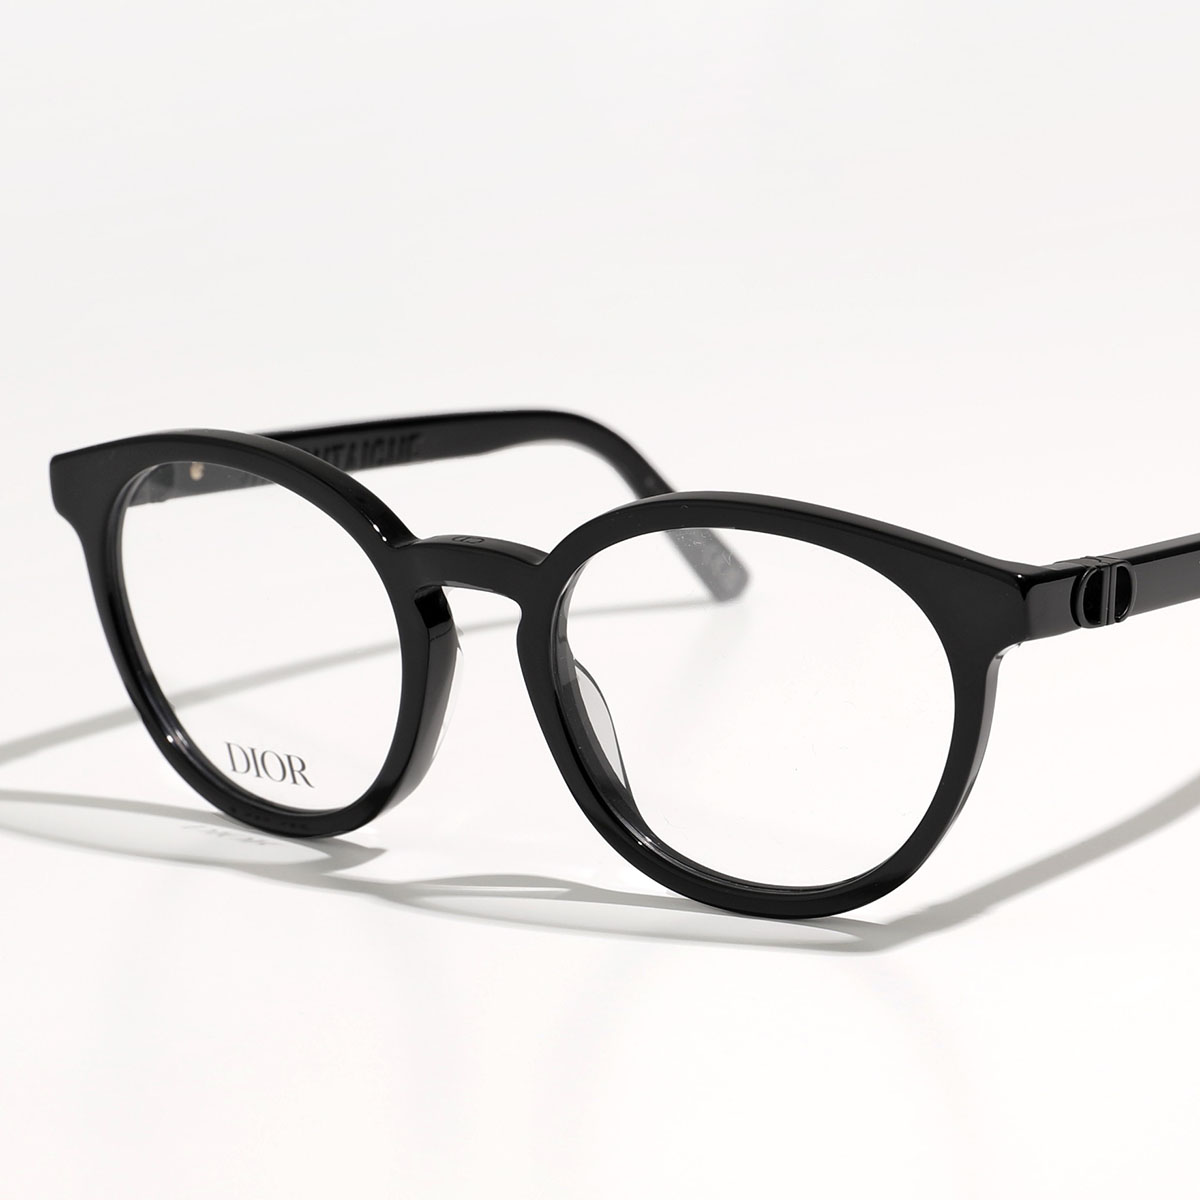 Dior ディオール メガネ 30MONTAIGNE MINIO モンテーニュ ミニ CD50047I レディース ボストン型 めがね 伊達メガネ ダテ 眼鏡 アイウェア カラー2色